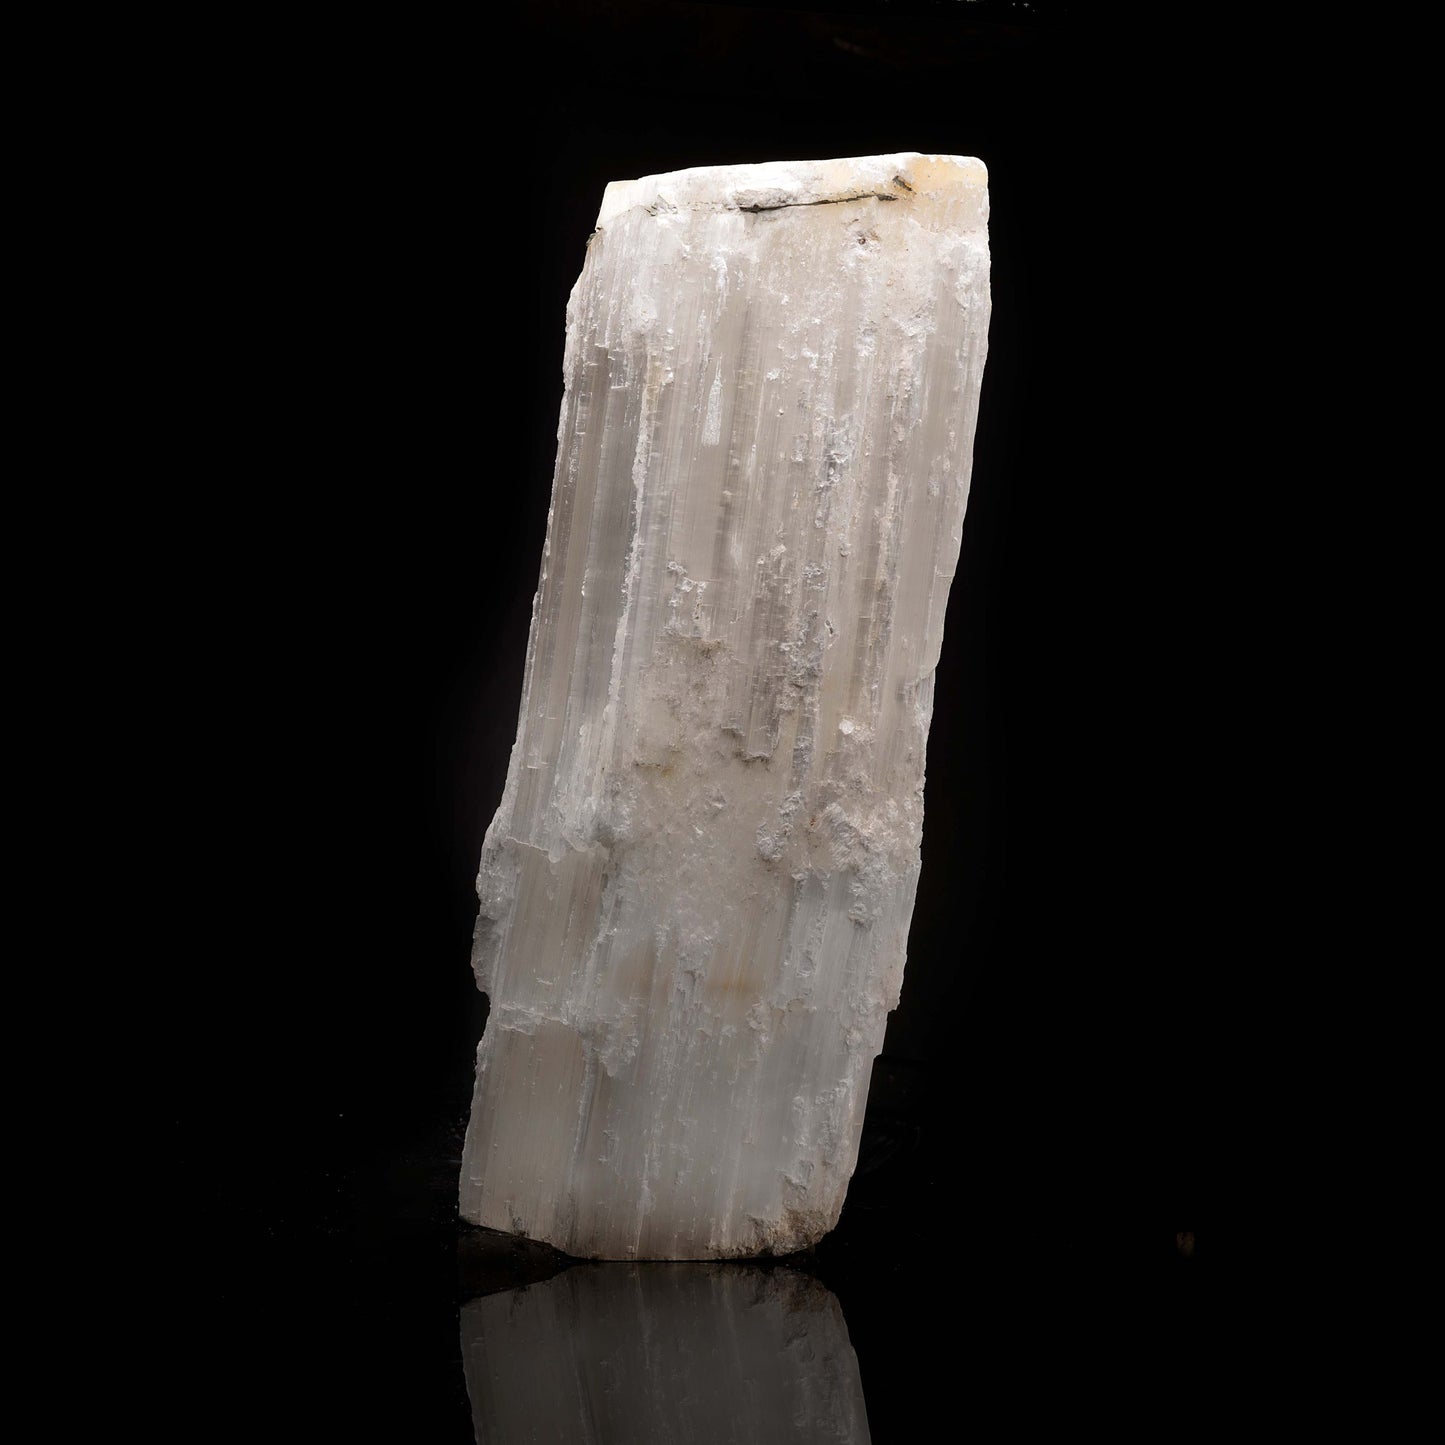 Cristal de selenita gigante // Ver. 2